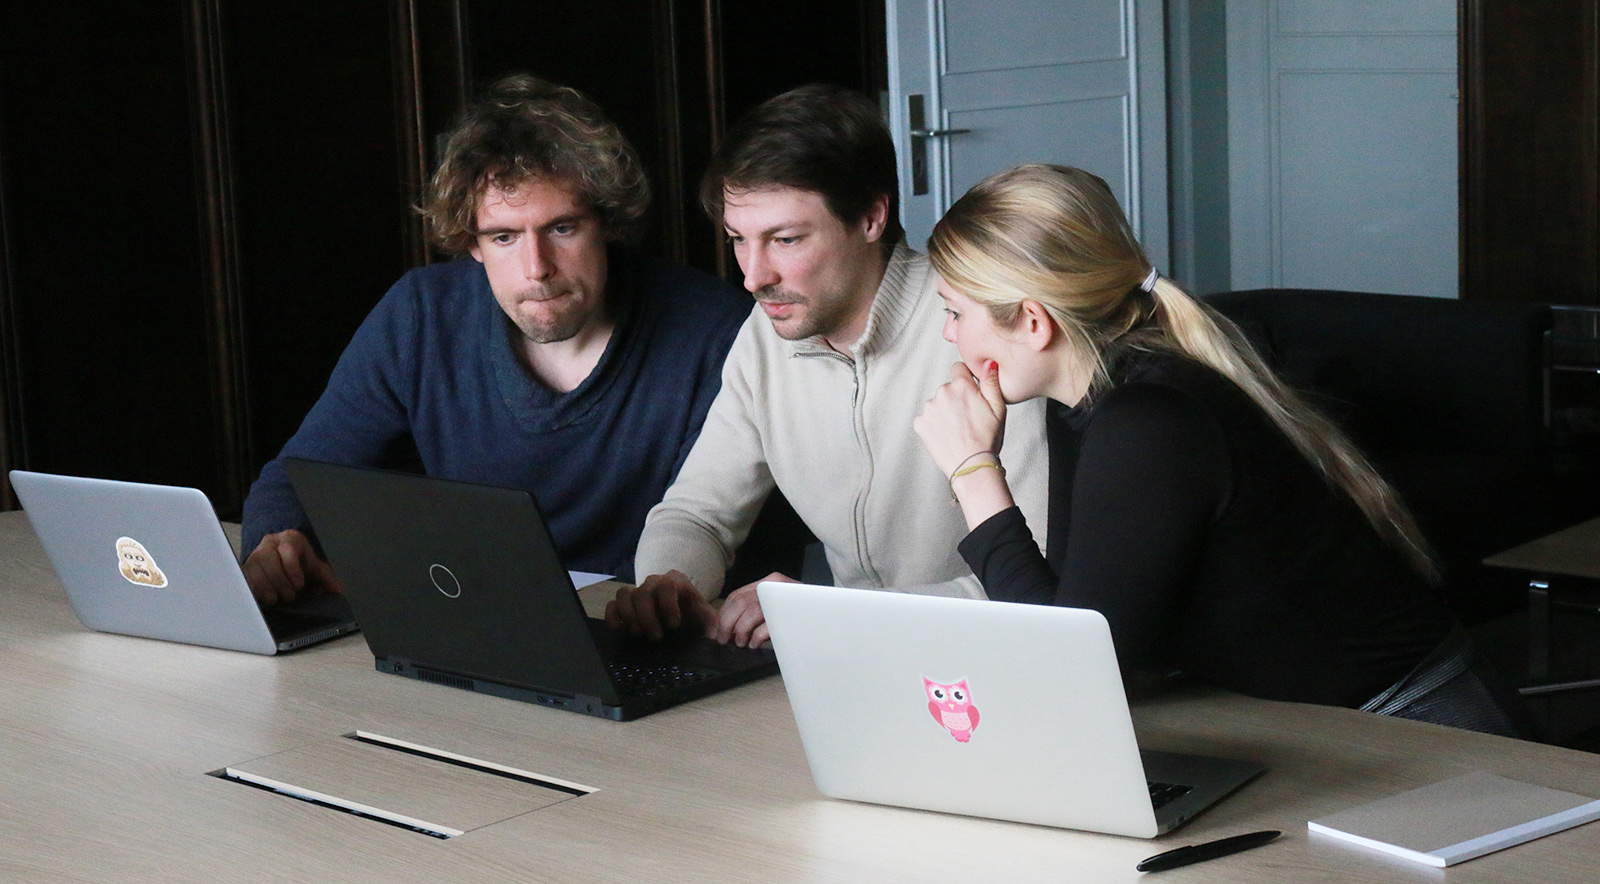 Zwei Männer und eine Frau sitzen an einem Tisch mit Laptops in einer Arbeitssituation